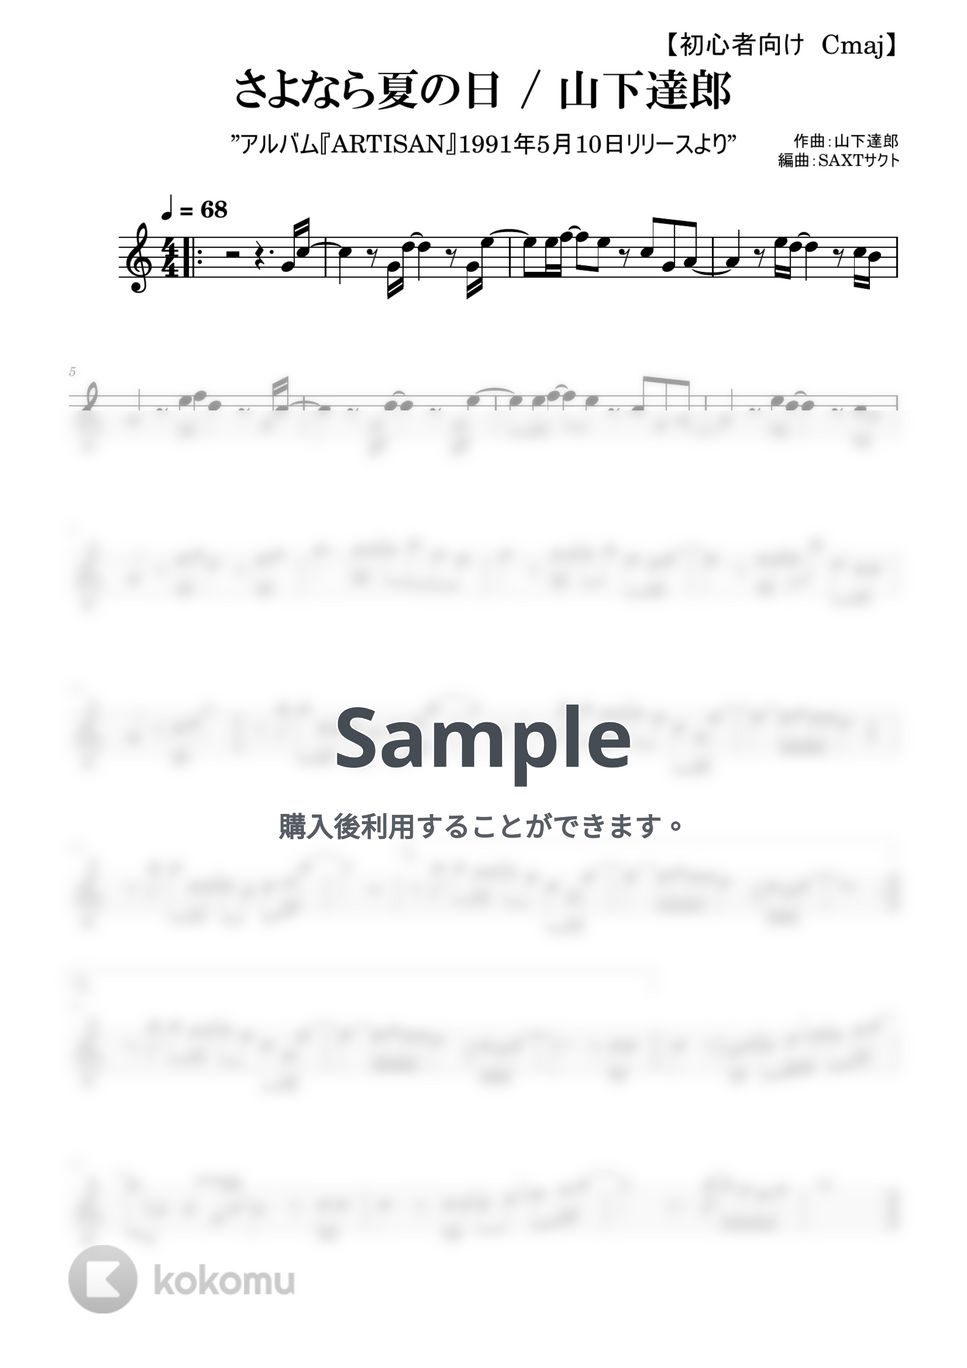 山下達郎 - さよなら夏の日 (めちゃラク譜) by SAXT